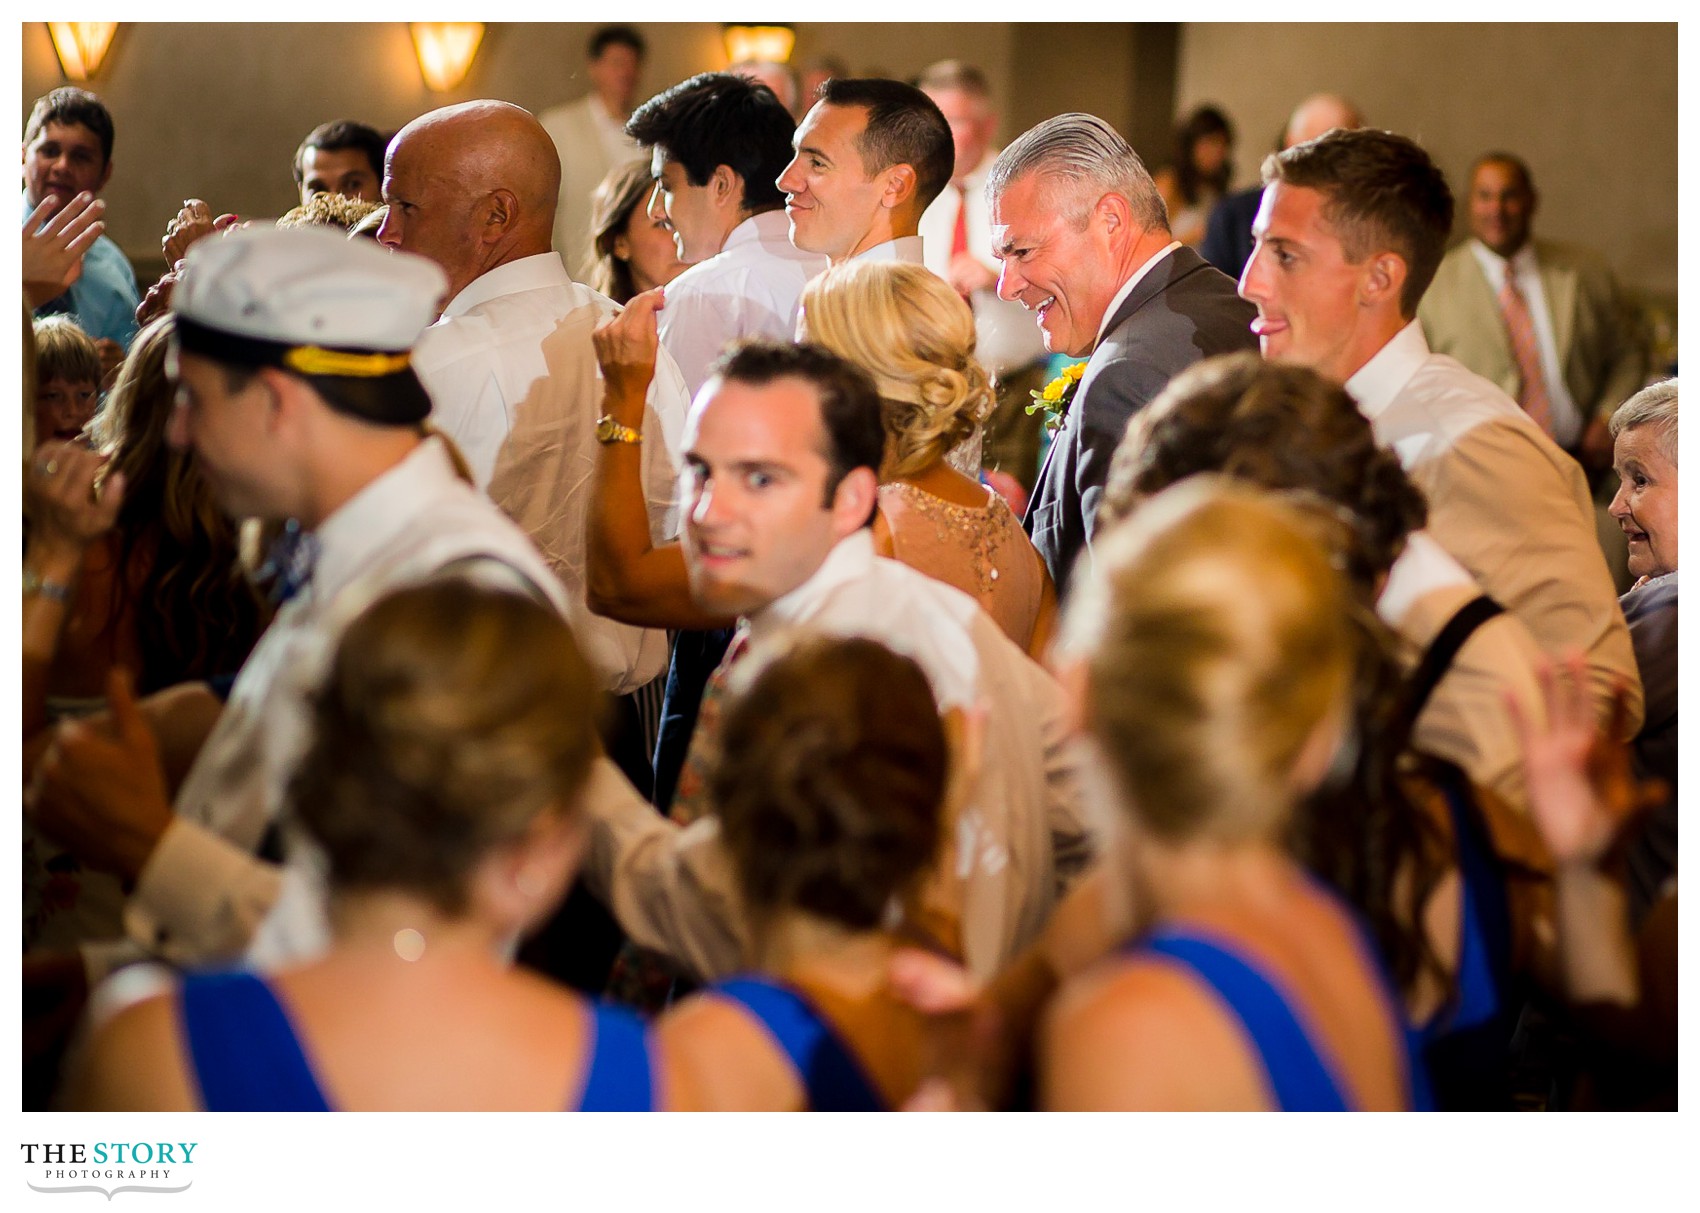 1000 Islands wedding guests dancing